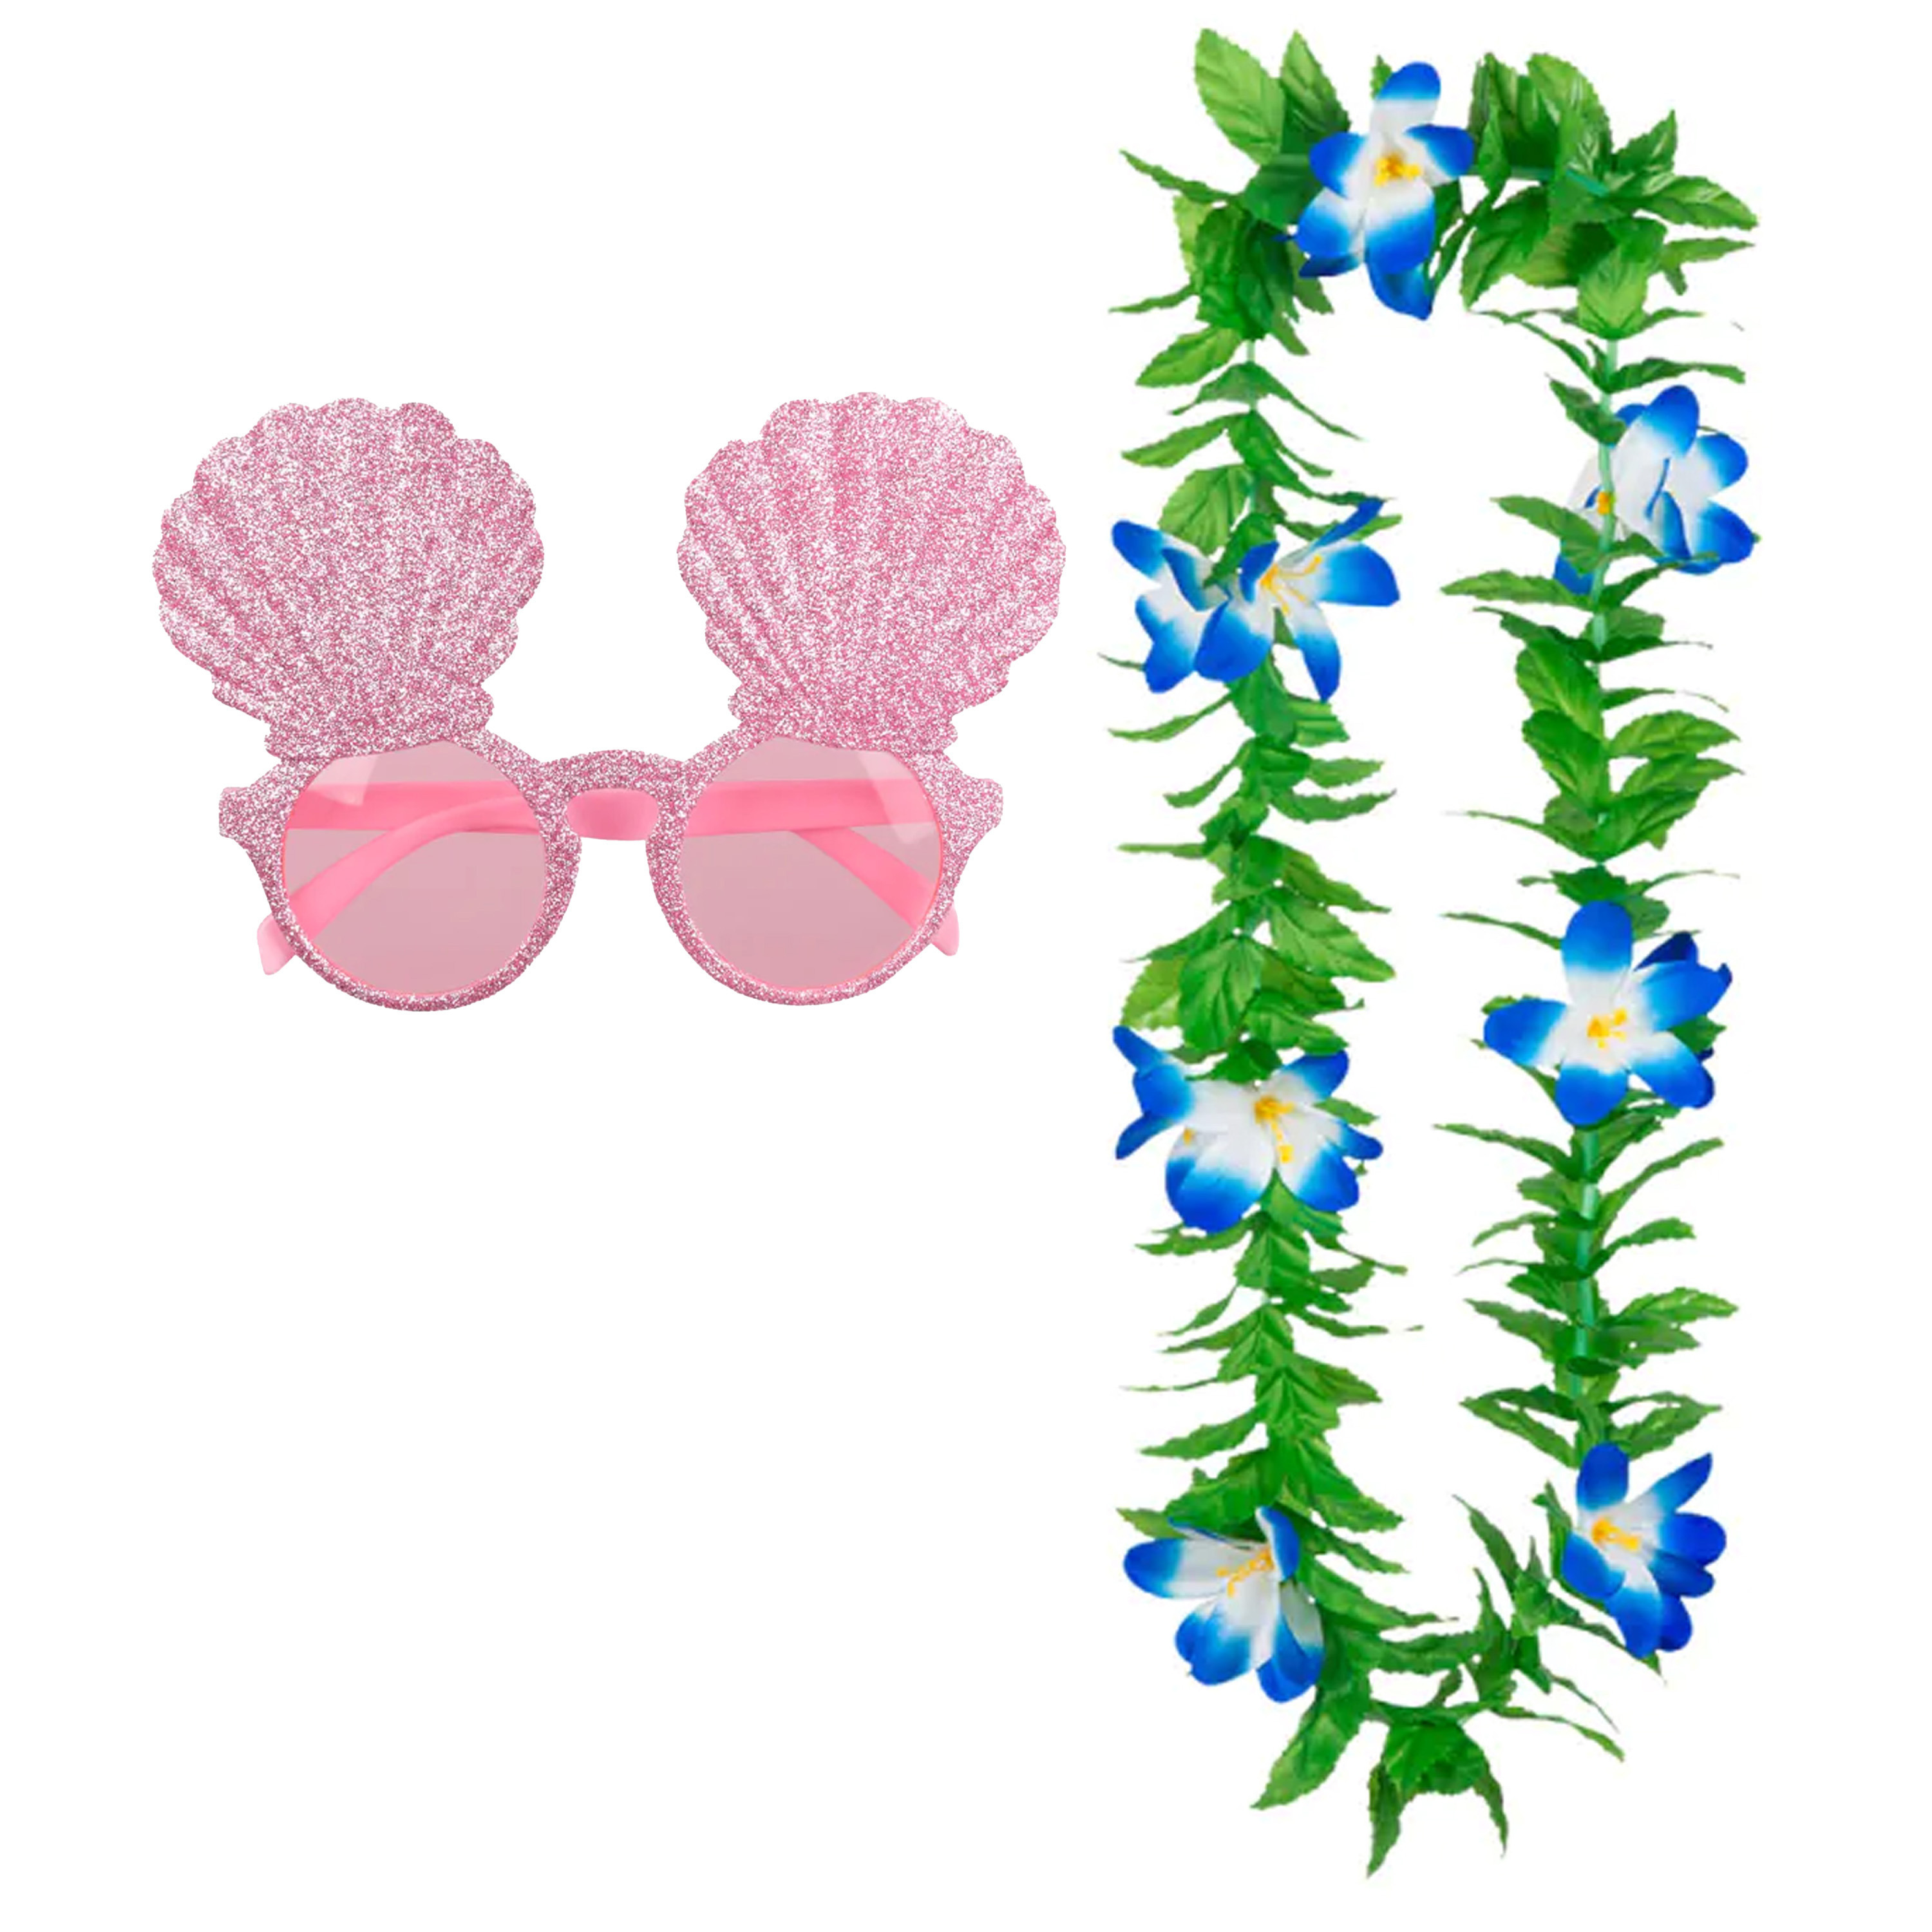 Tropische Hawaii party verkleed accessoires set schelpen zonnebril en bloemenkrans groen-blauw